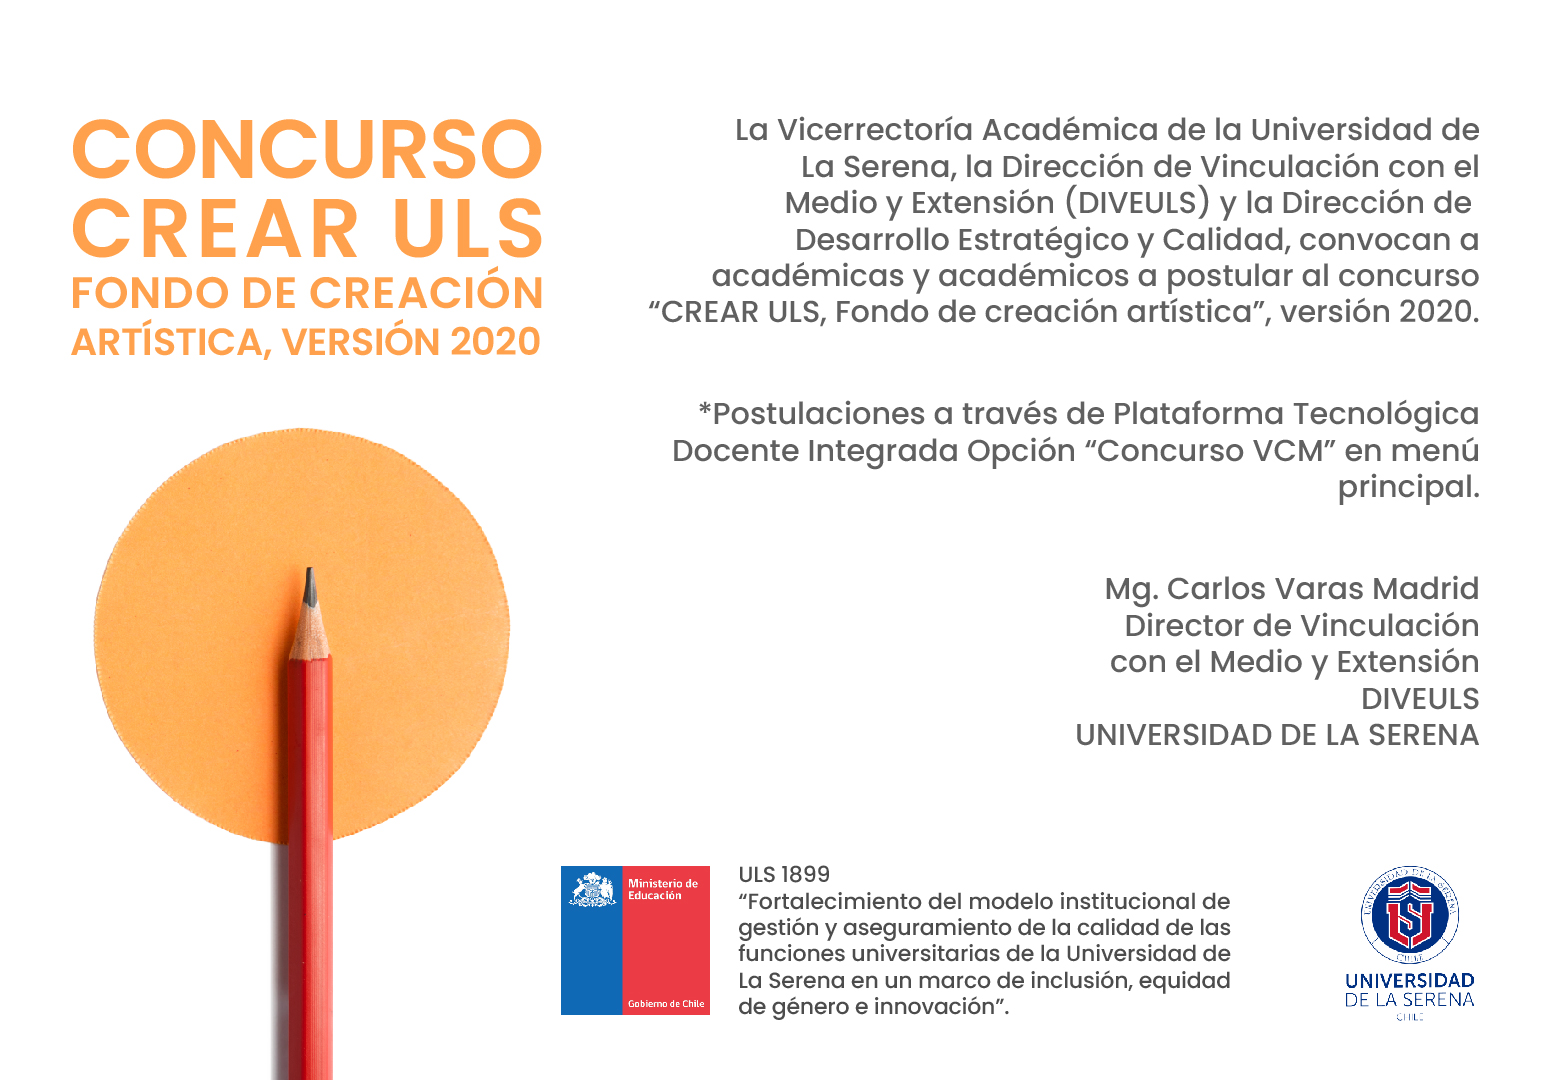 Nuevos Concursos: Crear ULS e Iniciativas de Responsabilidad Social Universitaria ULS